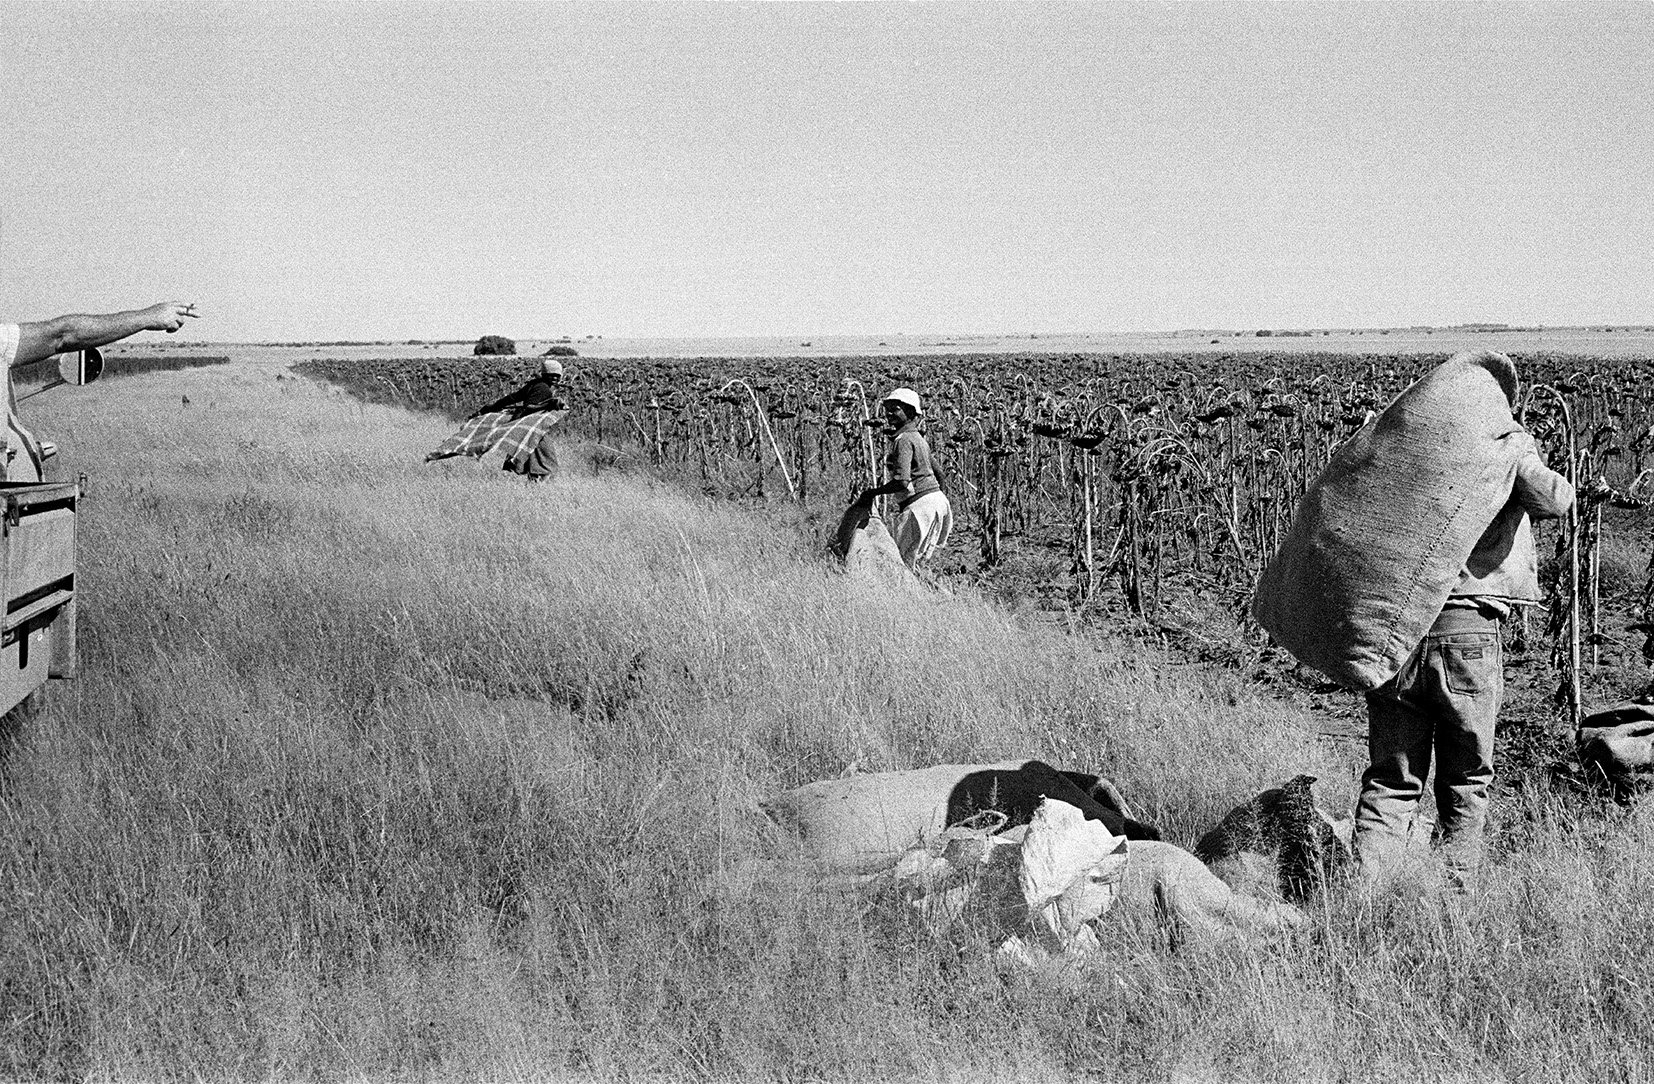  Sunflower Harvest, Vaalrand Farm, Bloemhof/ 1988 